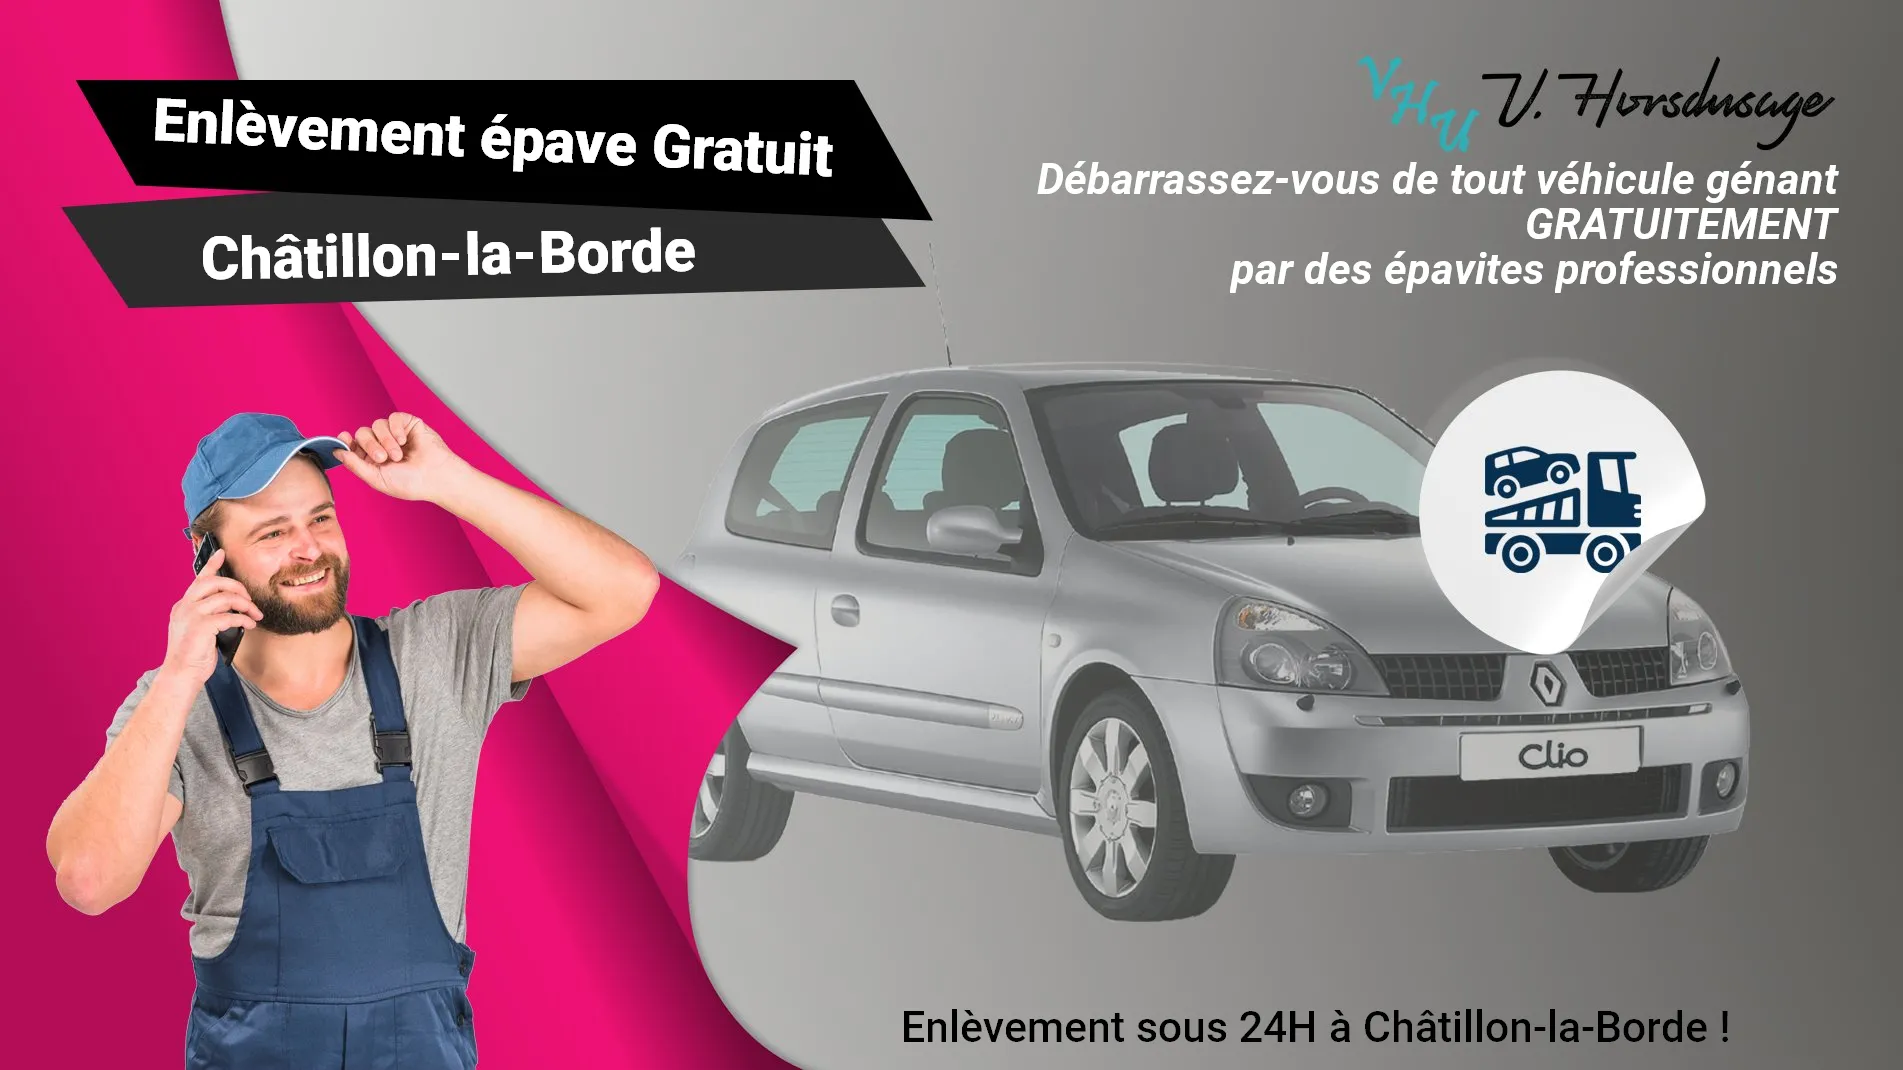 Pour un enlèvement gratuit à Châtillon-la-Borde, contactez nos épavistes agréé VHU